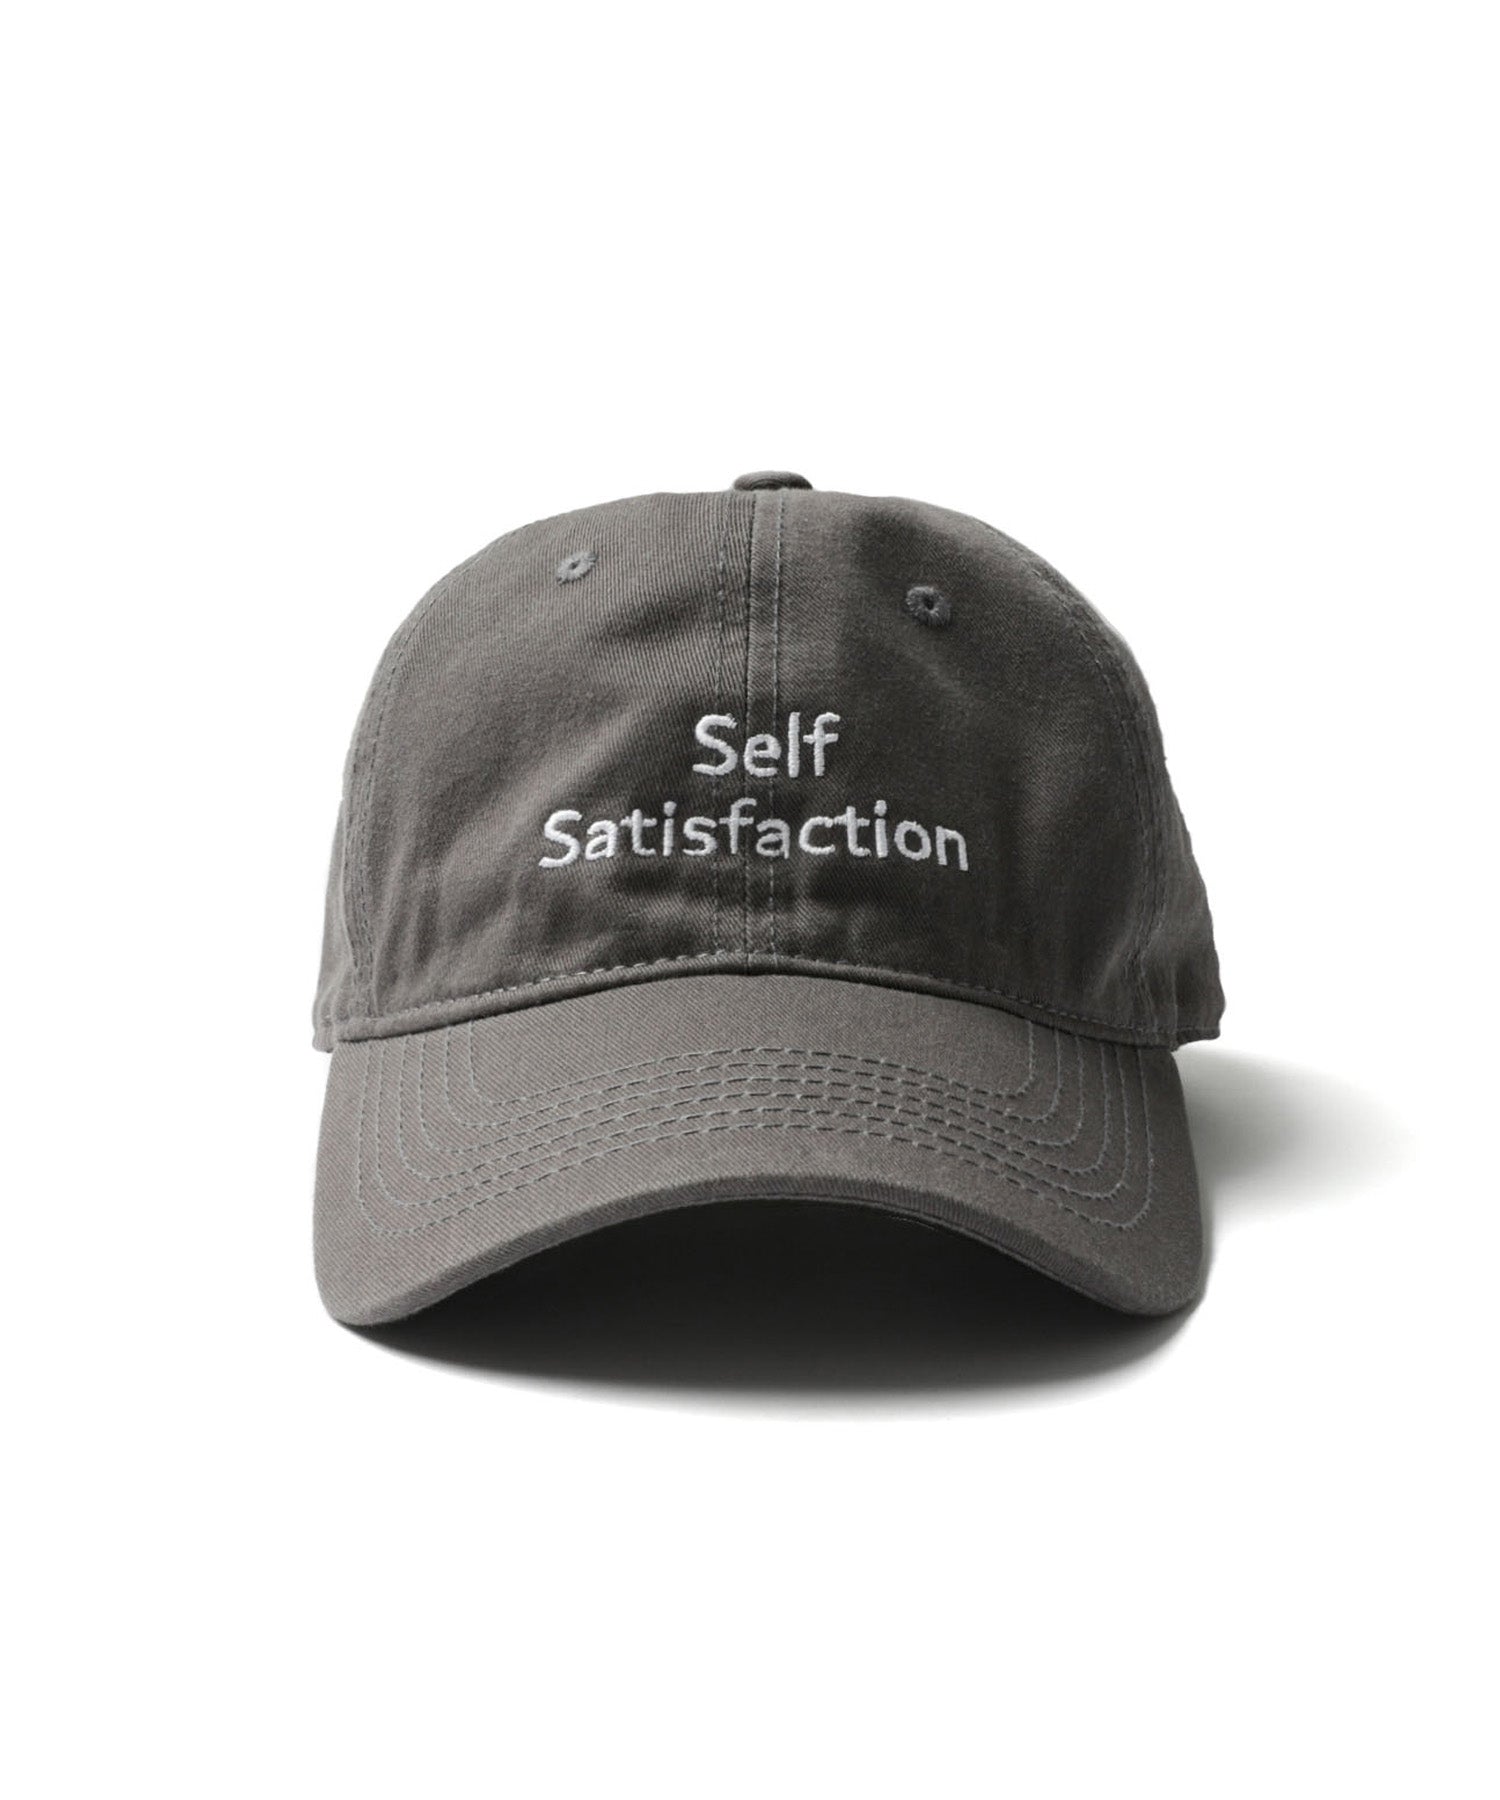 Self Satisfaction Cap